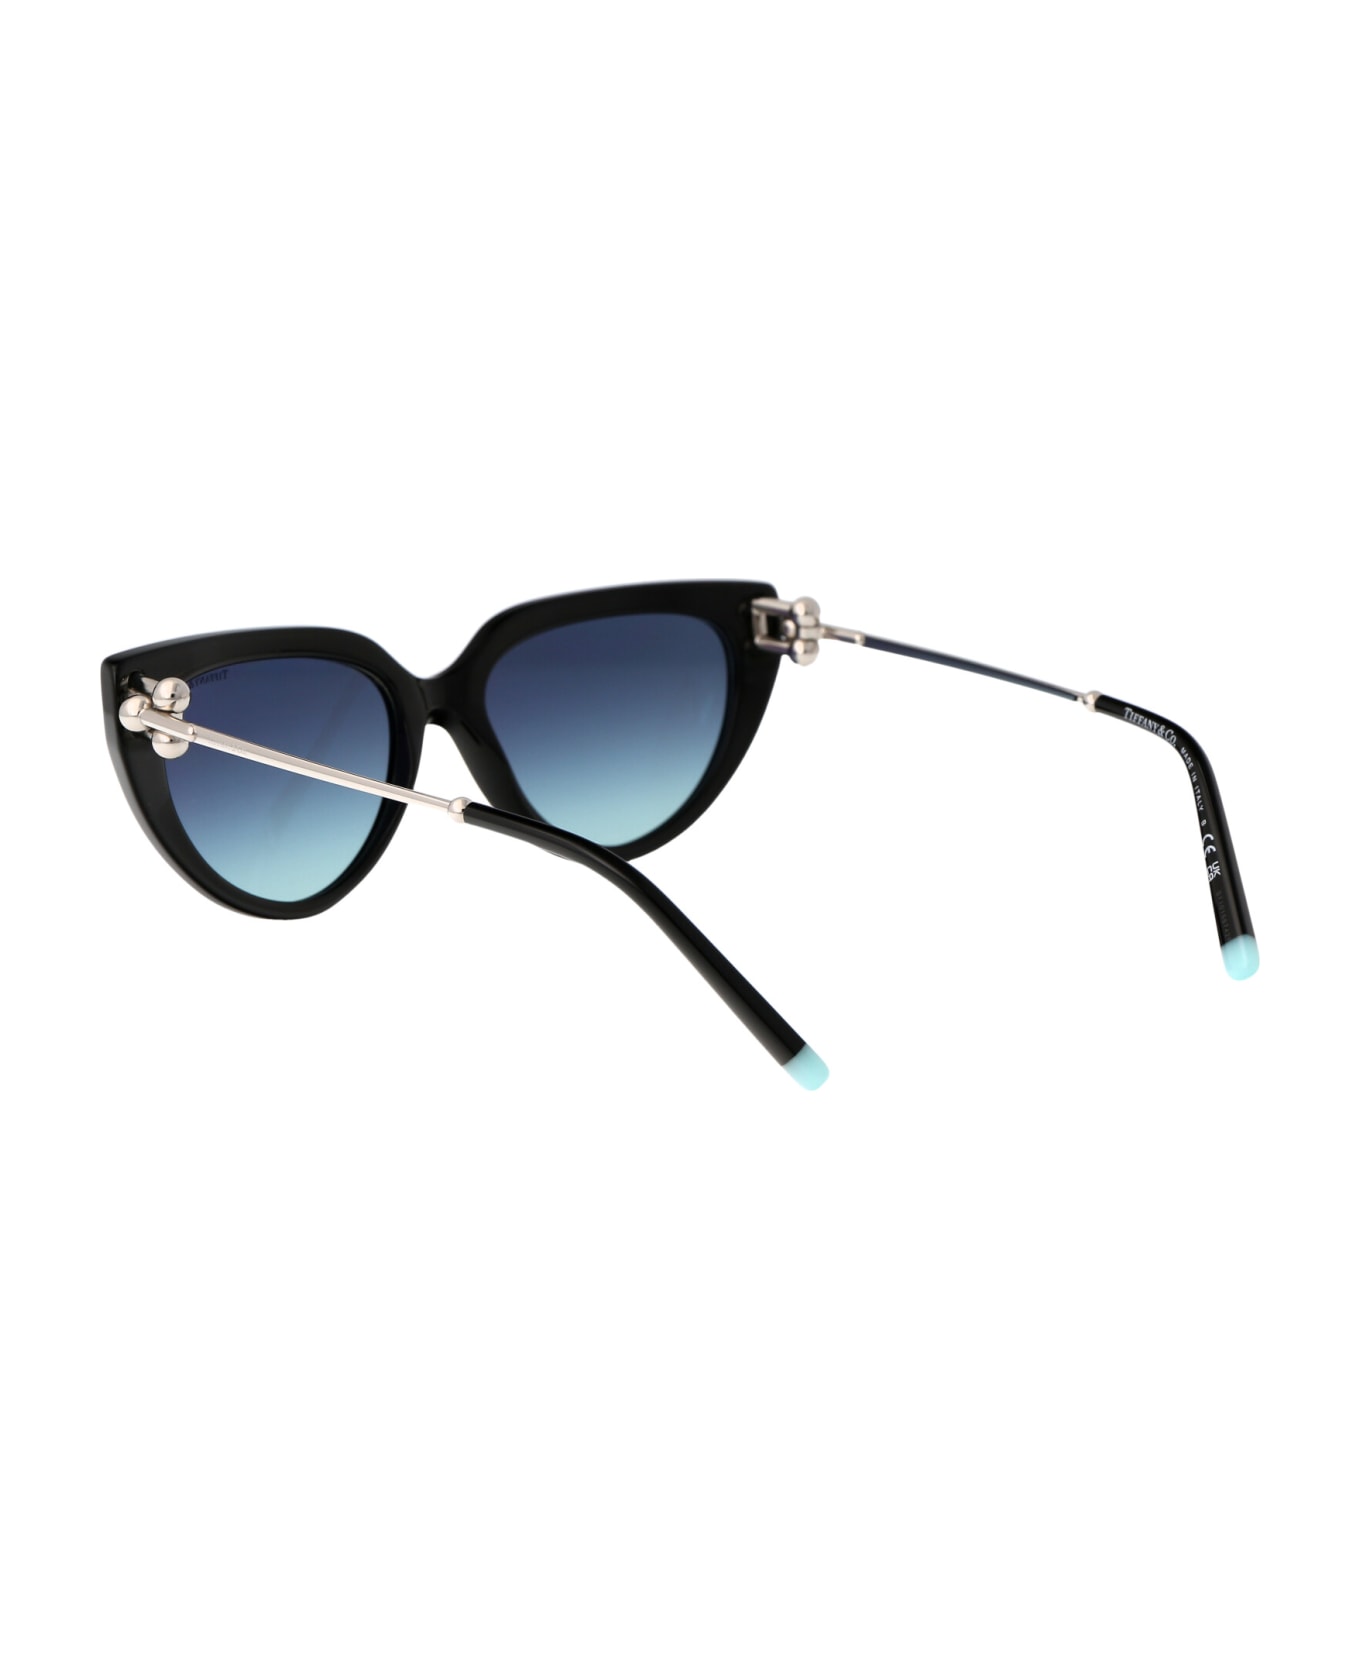 Tiffany & Co. 0tf4195 Sunglasses - 80019S Black